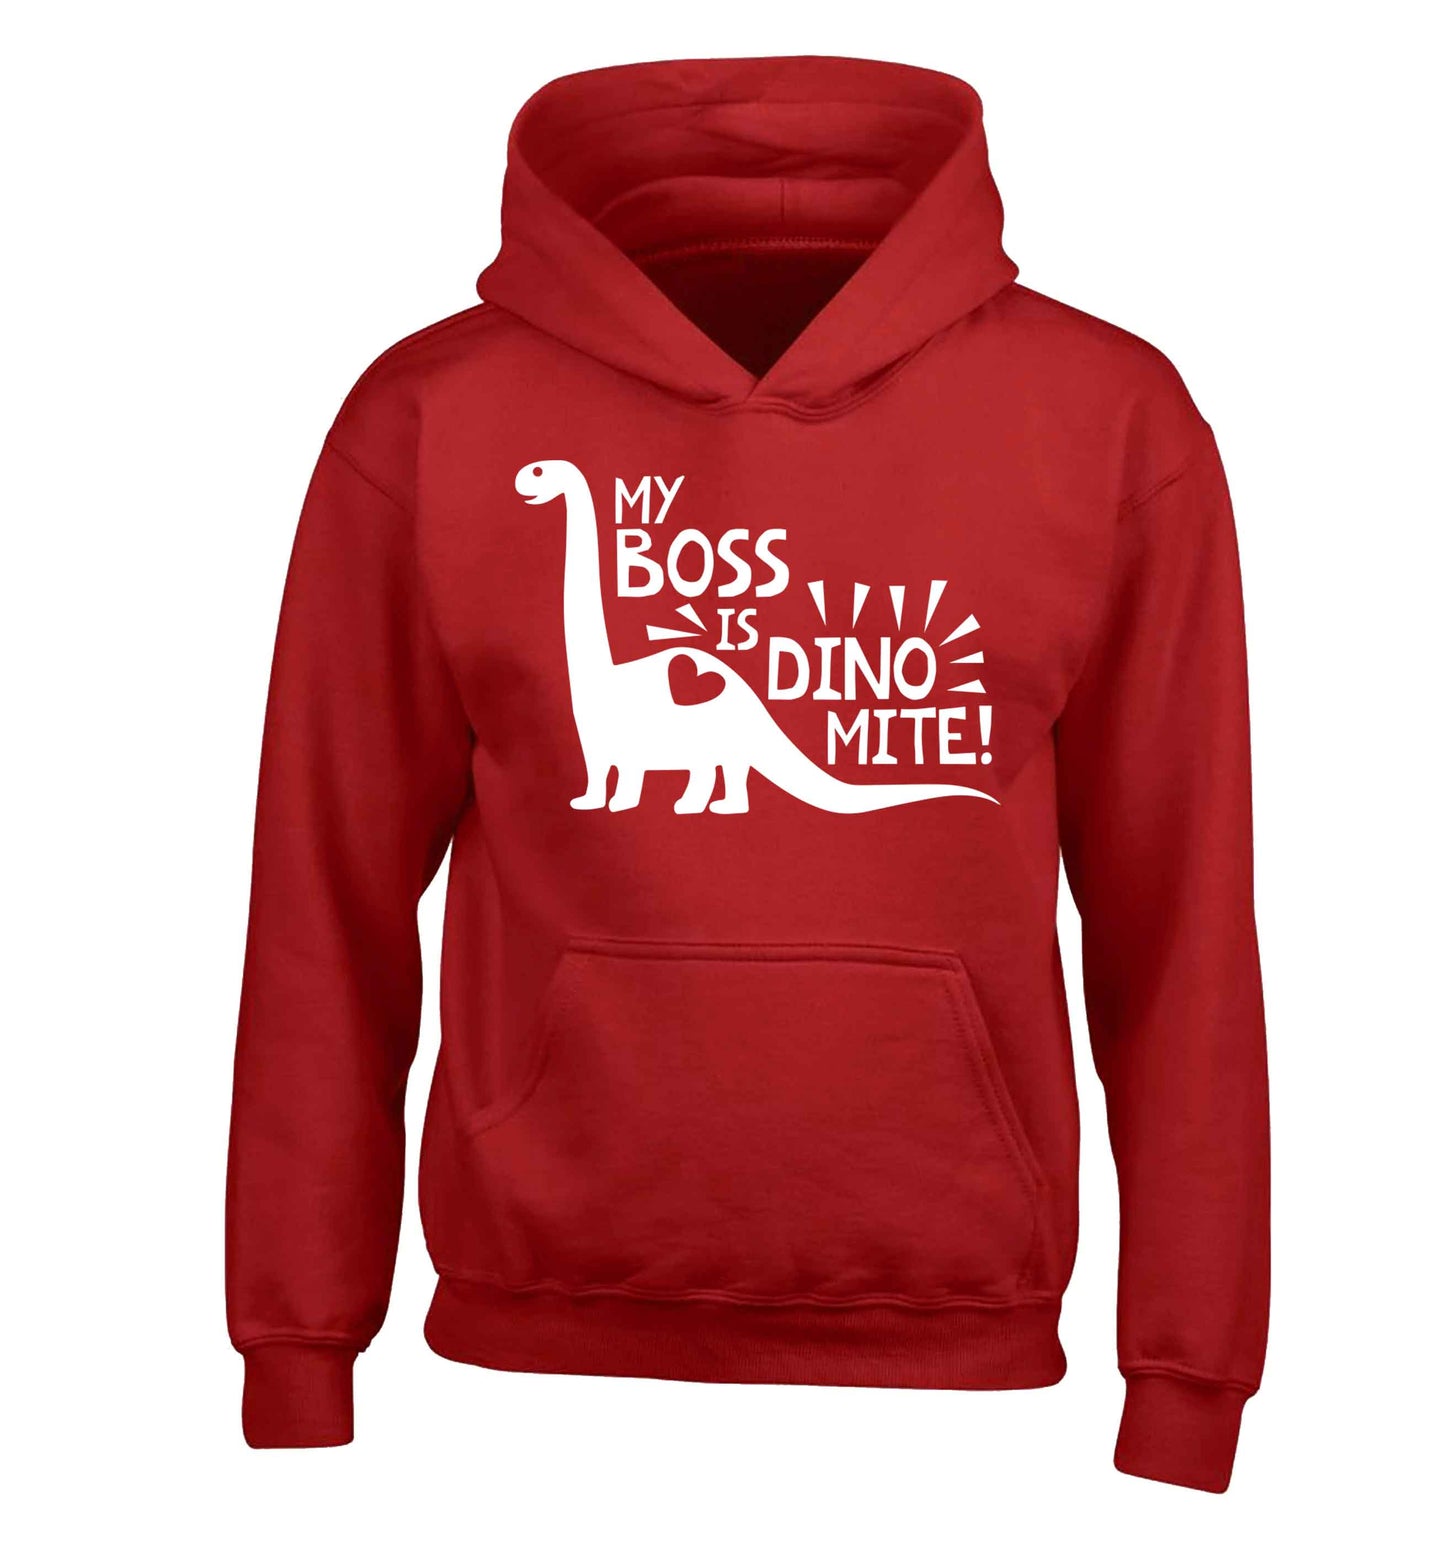 My boss is dinomite! children's red hoodie 12-13 Years